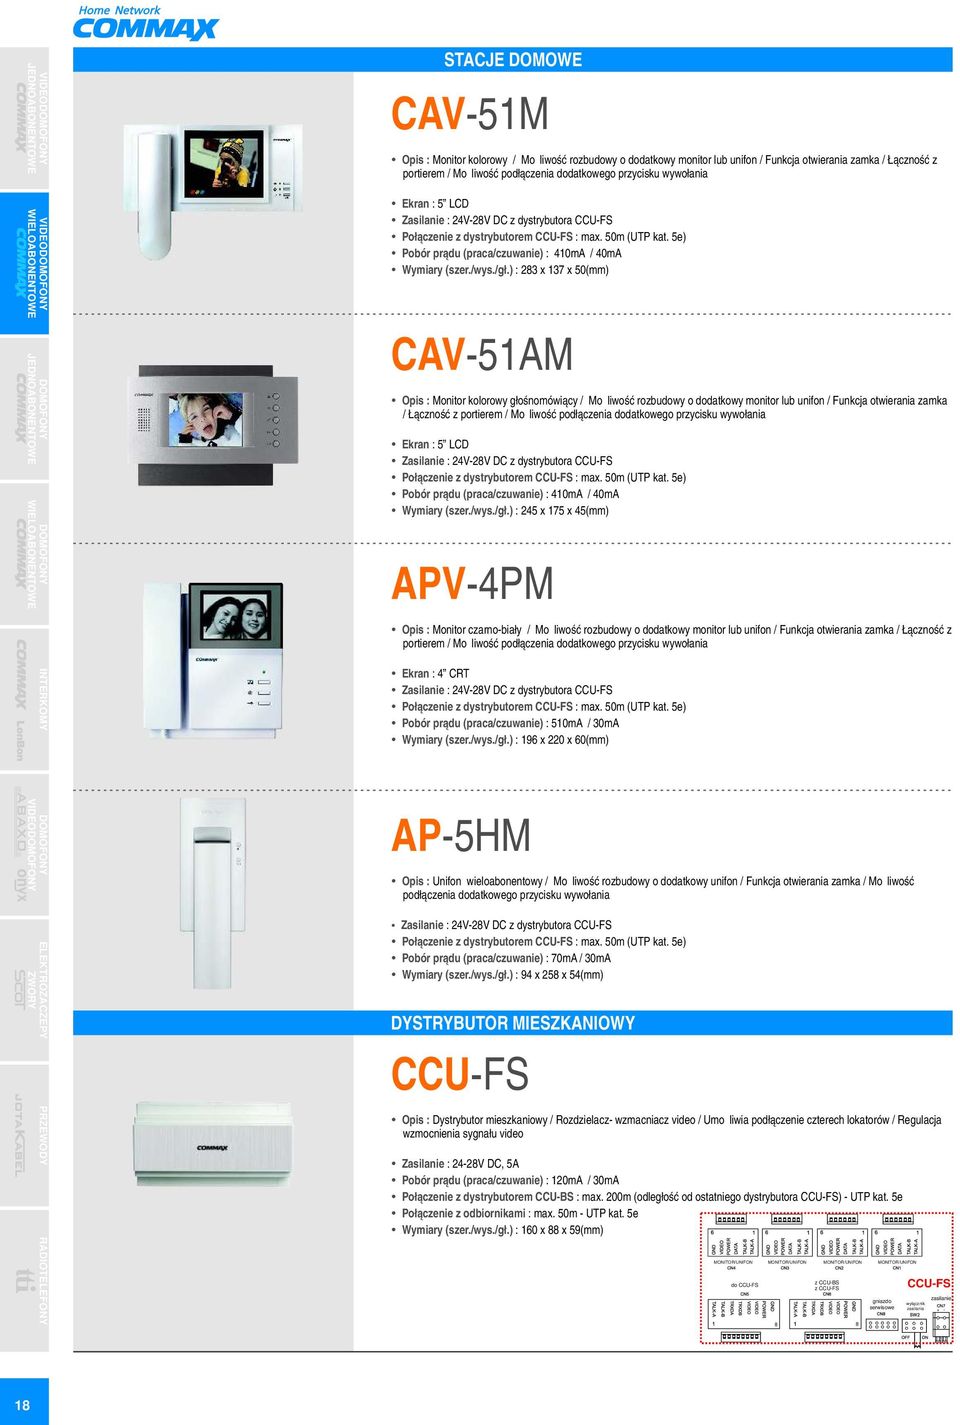 ) : 8 x 7 x 50(mm) CAV-5AM Opis : Monitor kolorowy głośnomówiący / Możliwość rozbudowy o dodatkowy monitor lub unifon / Funkcja otwierania zamka / Łączność z portierem / Możliwość podłączenia